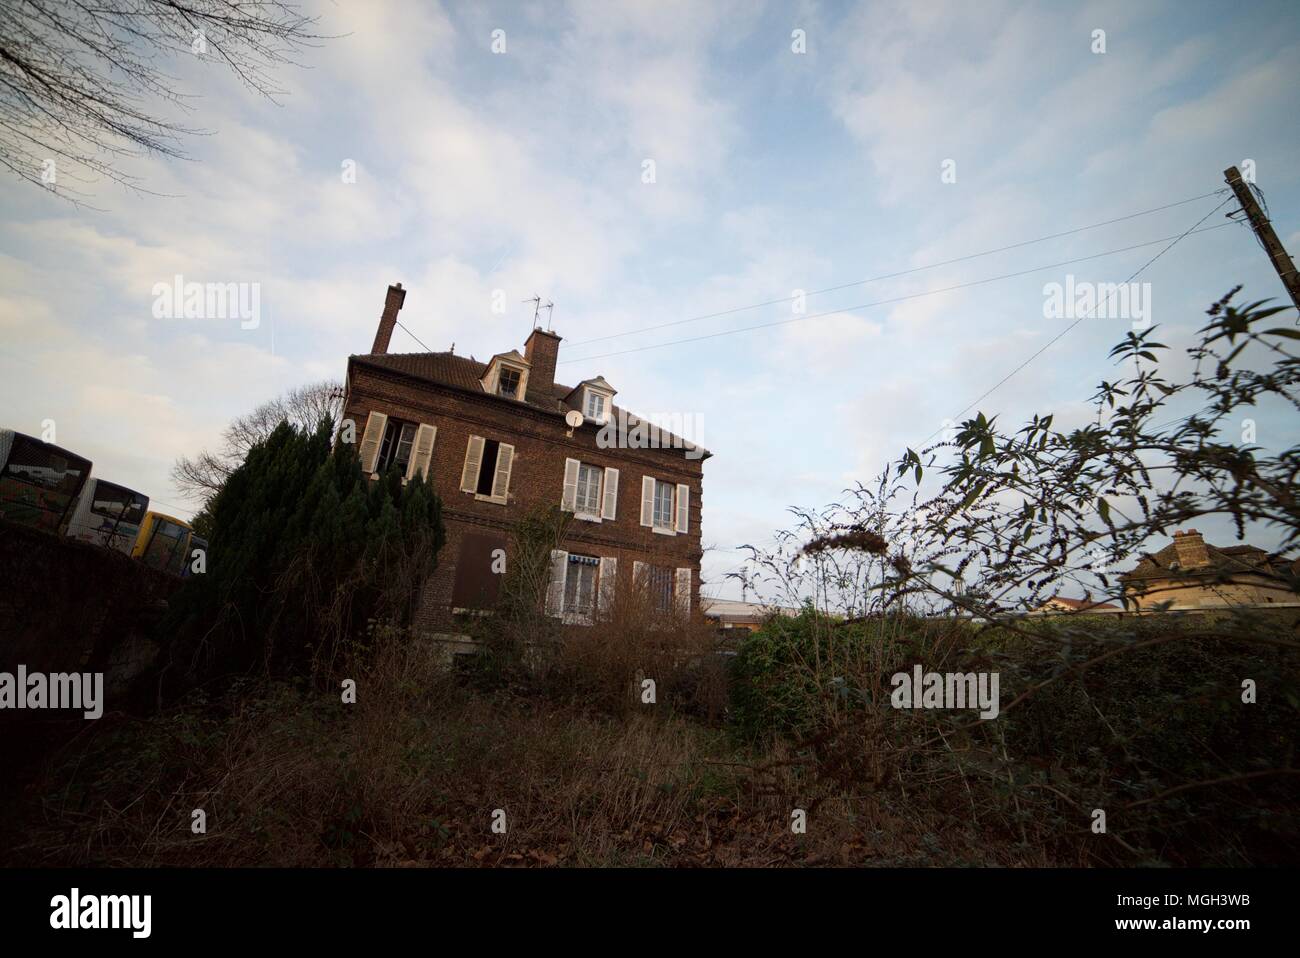 Creepy à la maison individuelle maison abandonnée avec brisé des fenêtres Banque D'Images